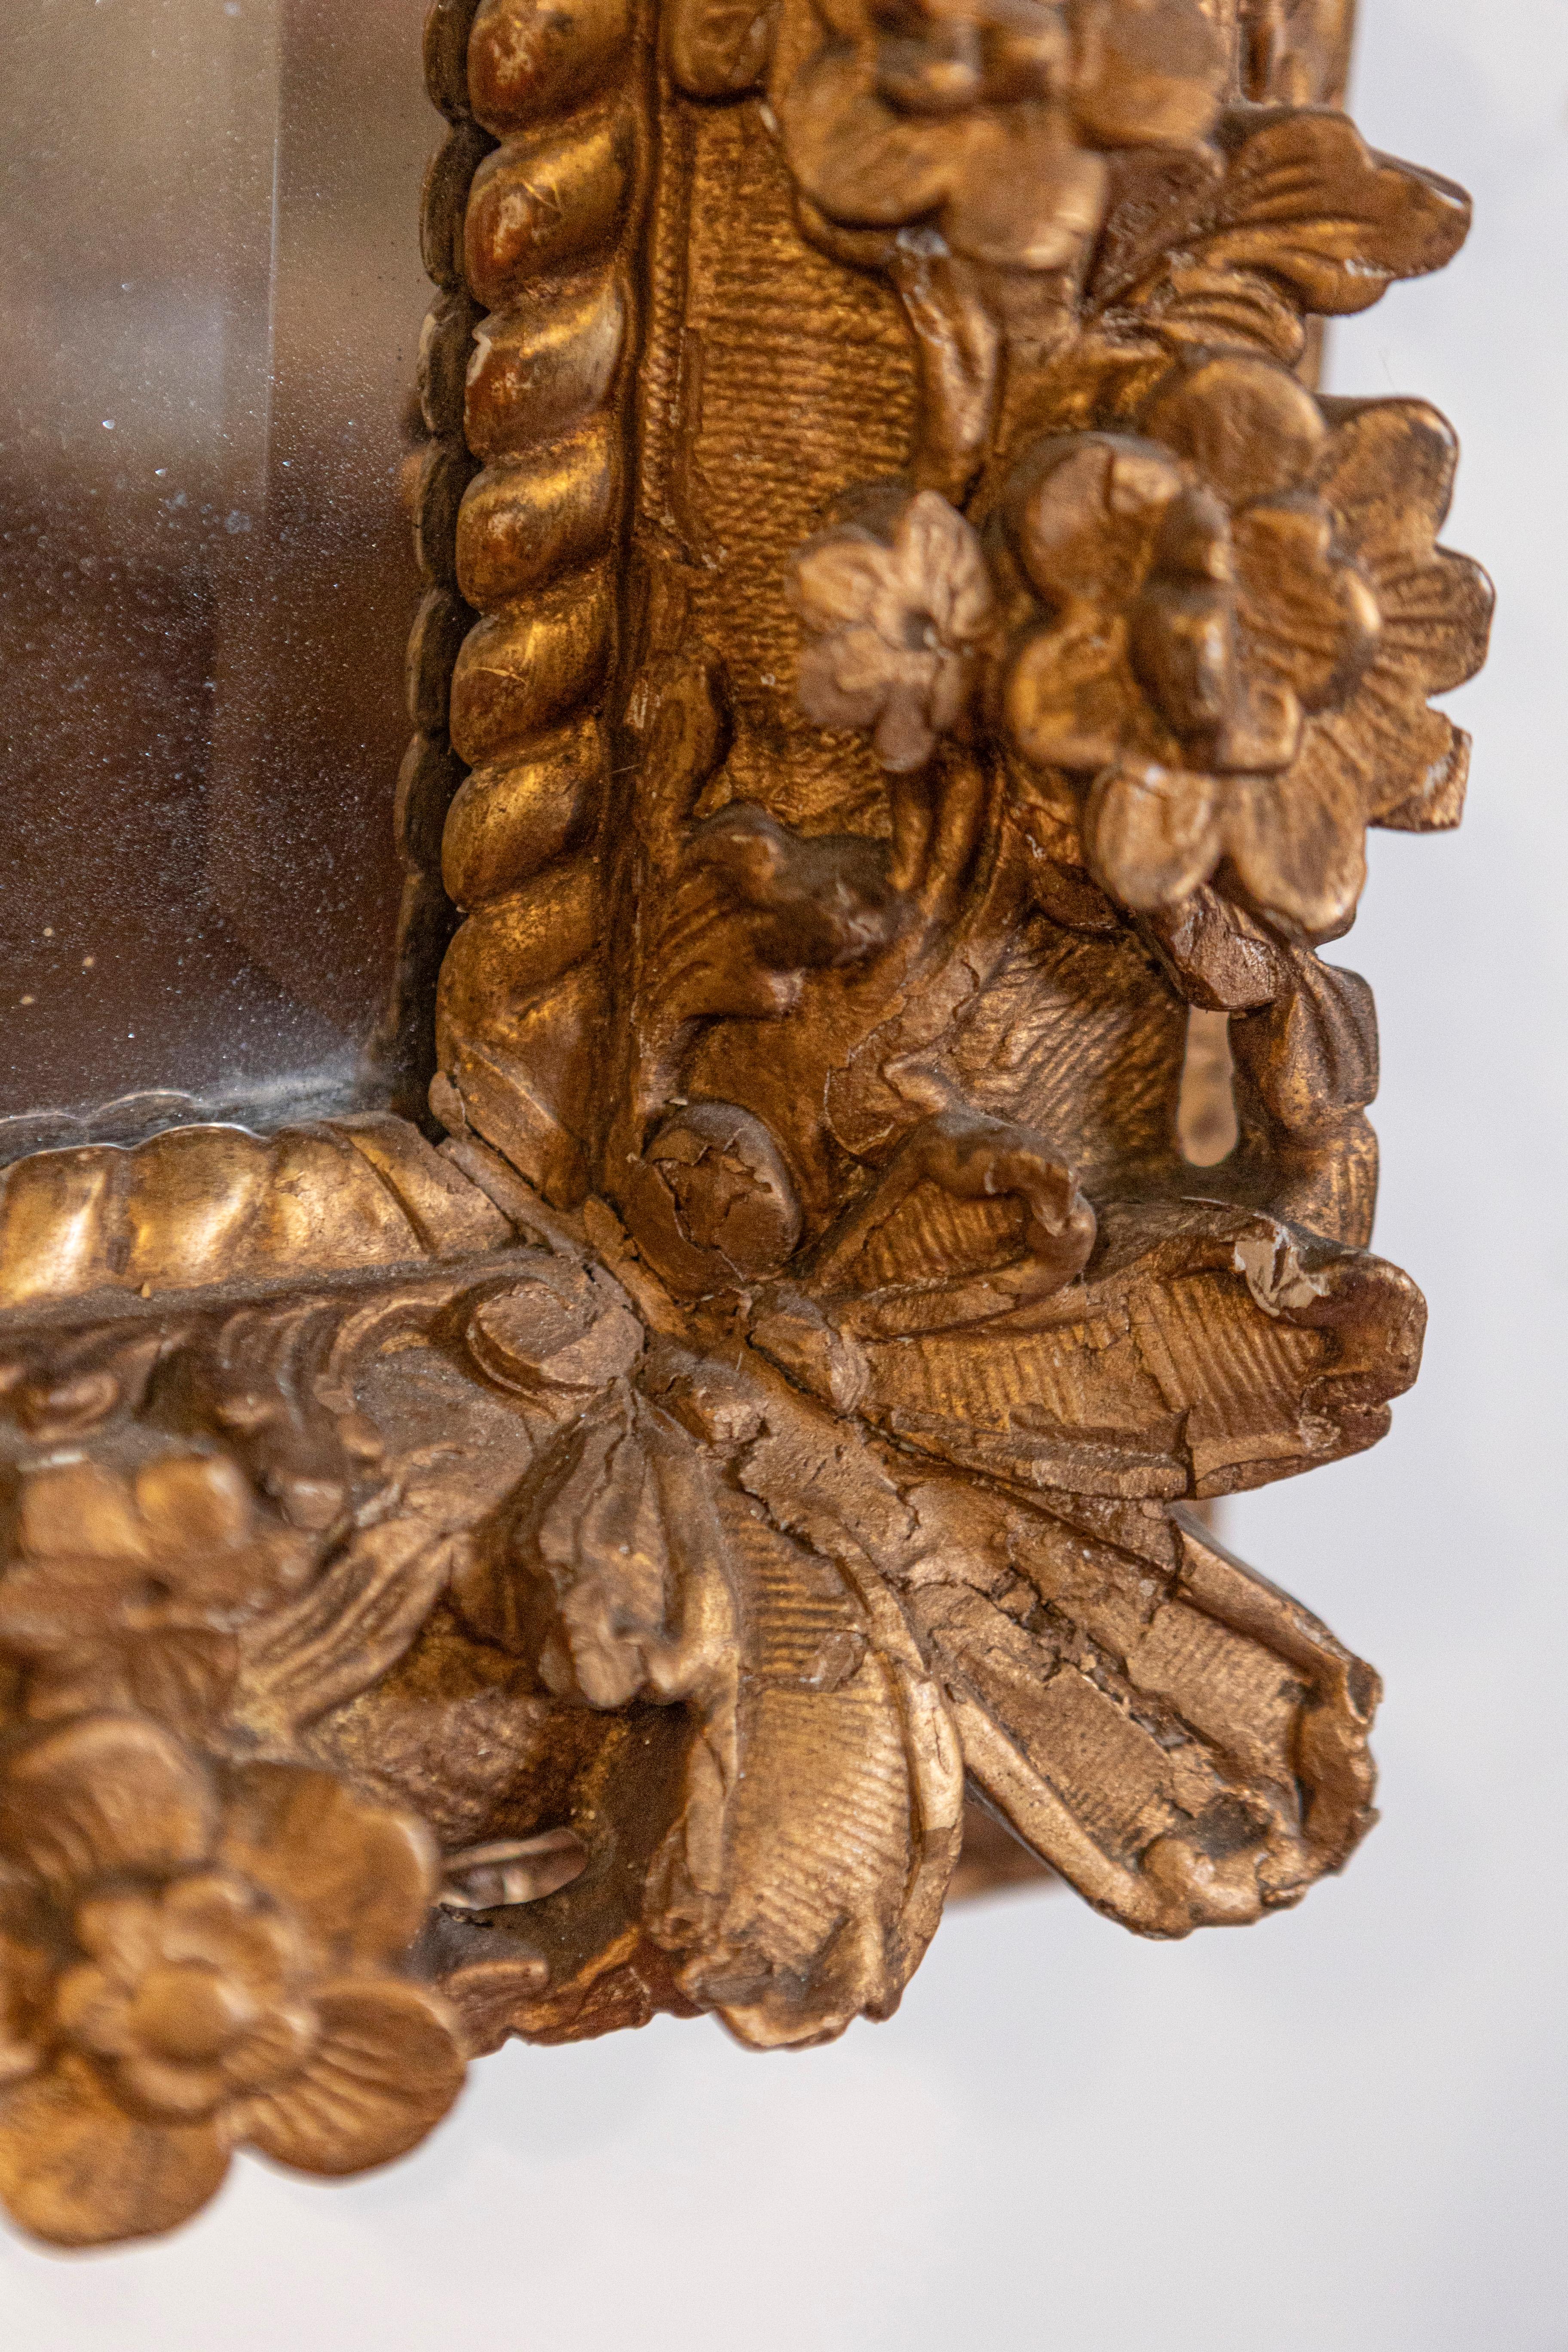 Dieser französische Schnitzspiegel im Régence-Stil aus dem späten 18. Jahrhundert hat einen exquisiten rechteckigen Rahmen aus vergoldetem Holz, der an den Ecken mit zarten Blumenmotiven verziert ist. Die Qualität der Schnitzerei ist unbestreitbar.